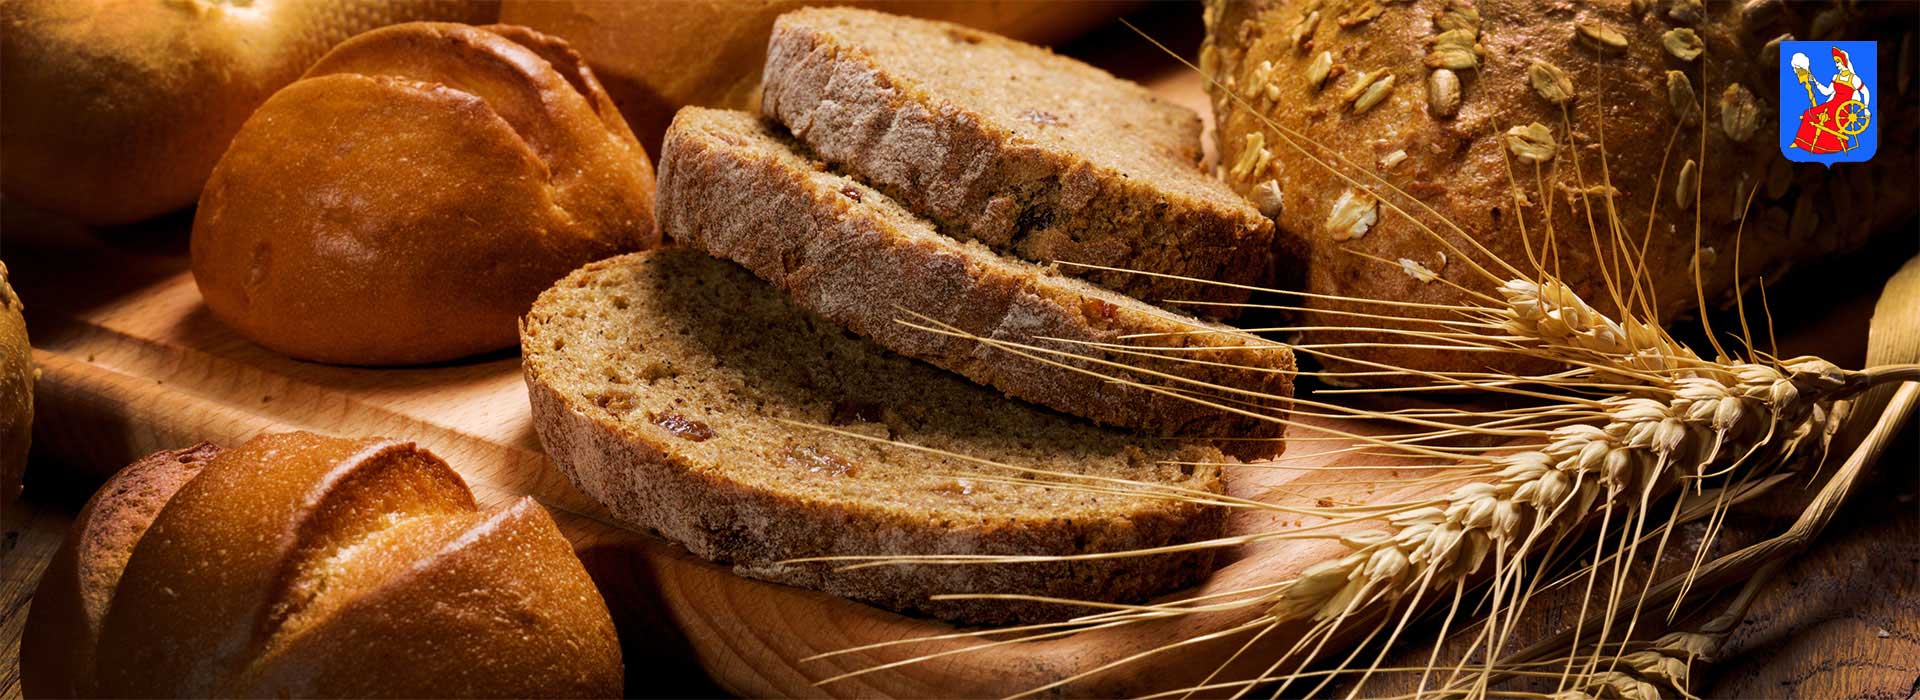 Развитие предприятия хлебопродуктов (хлеб)